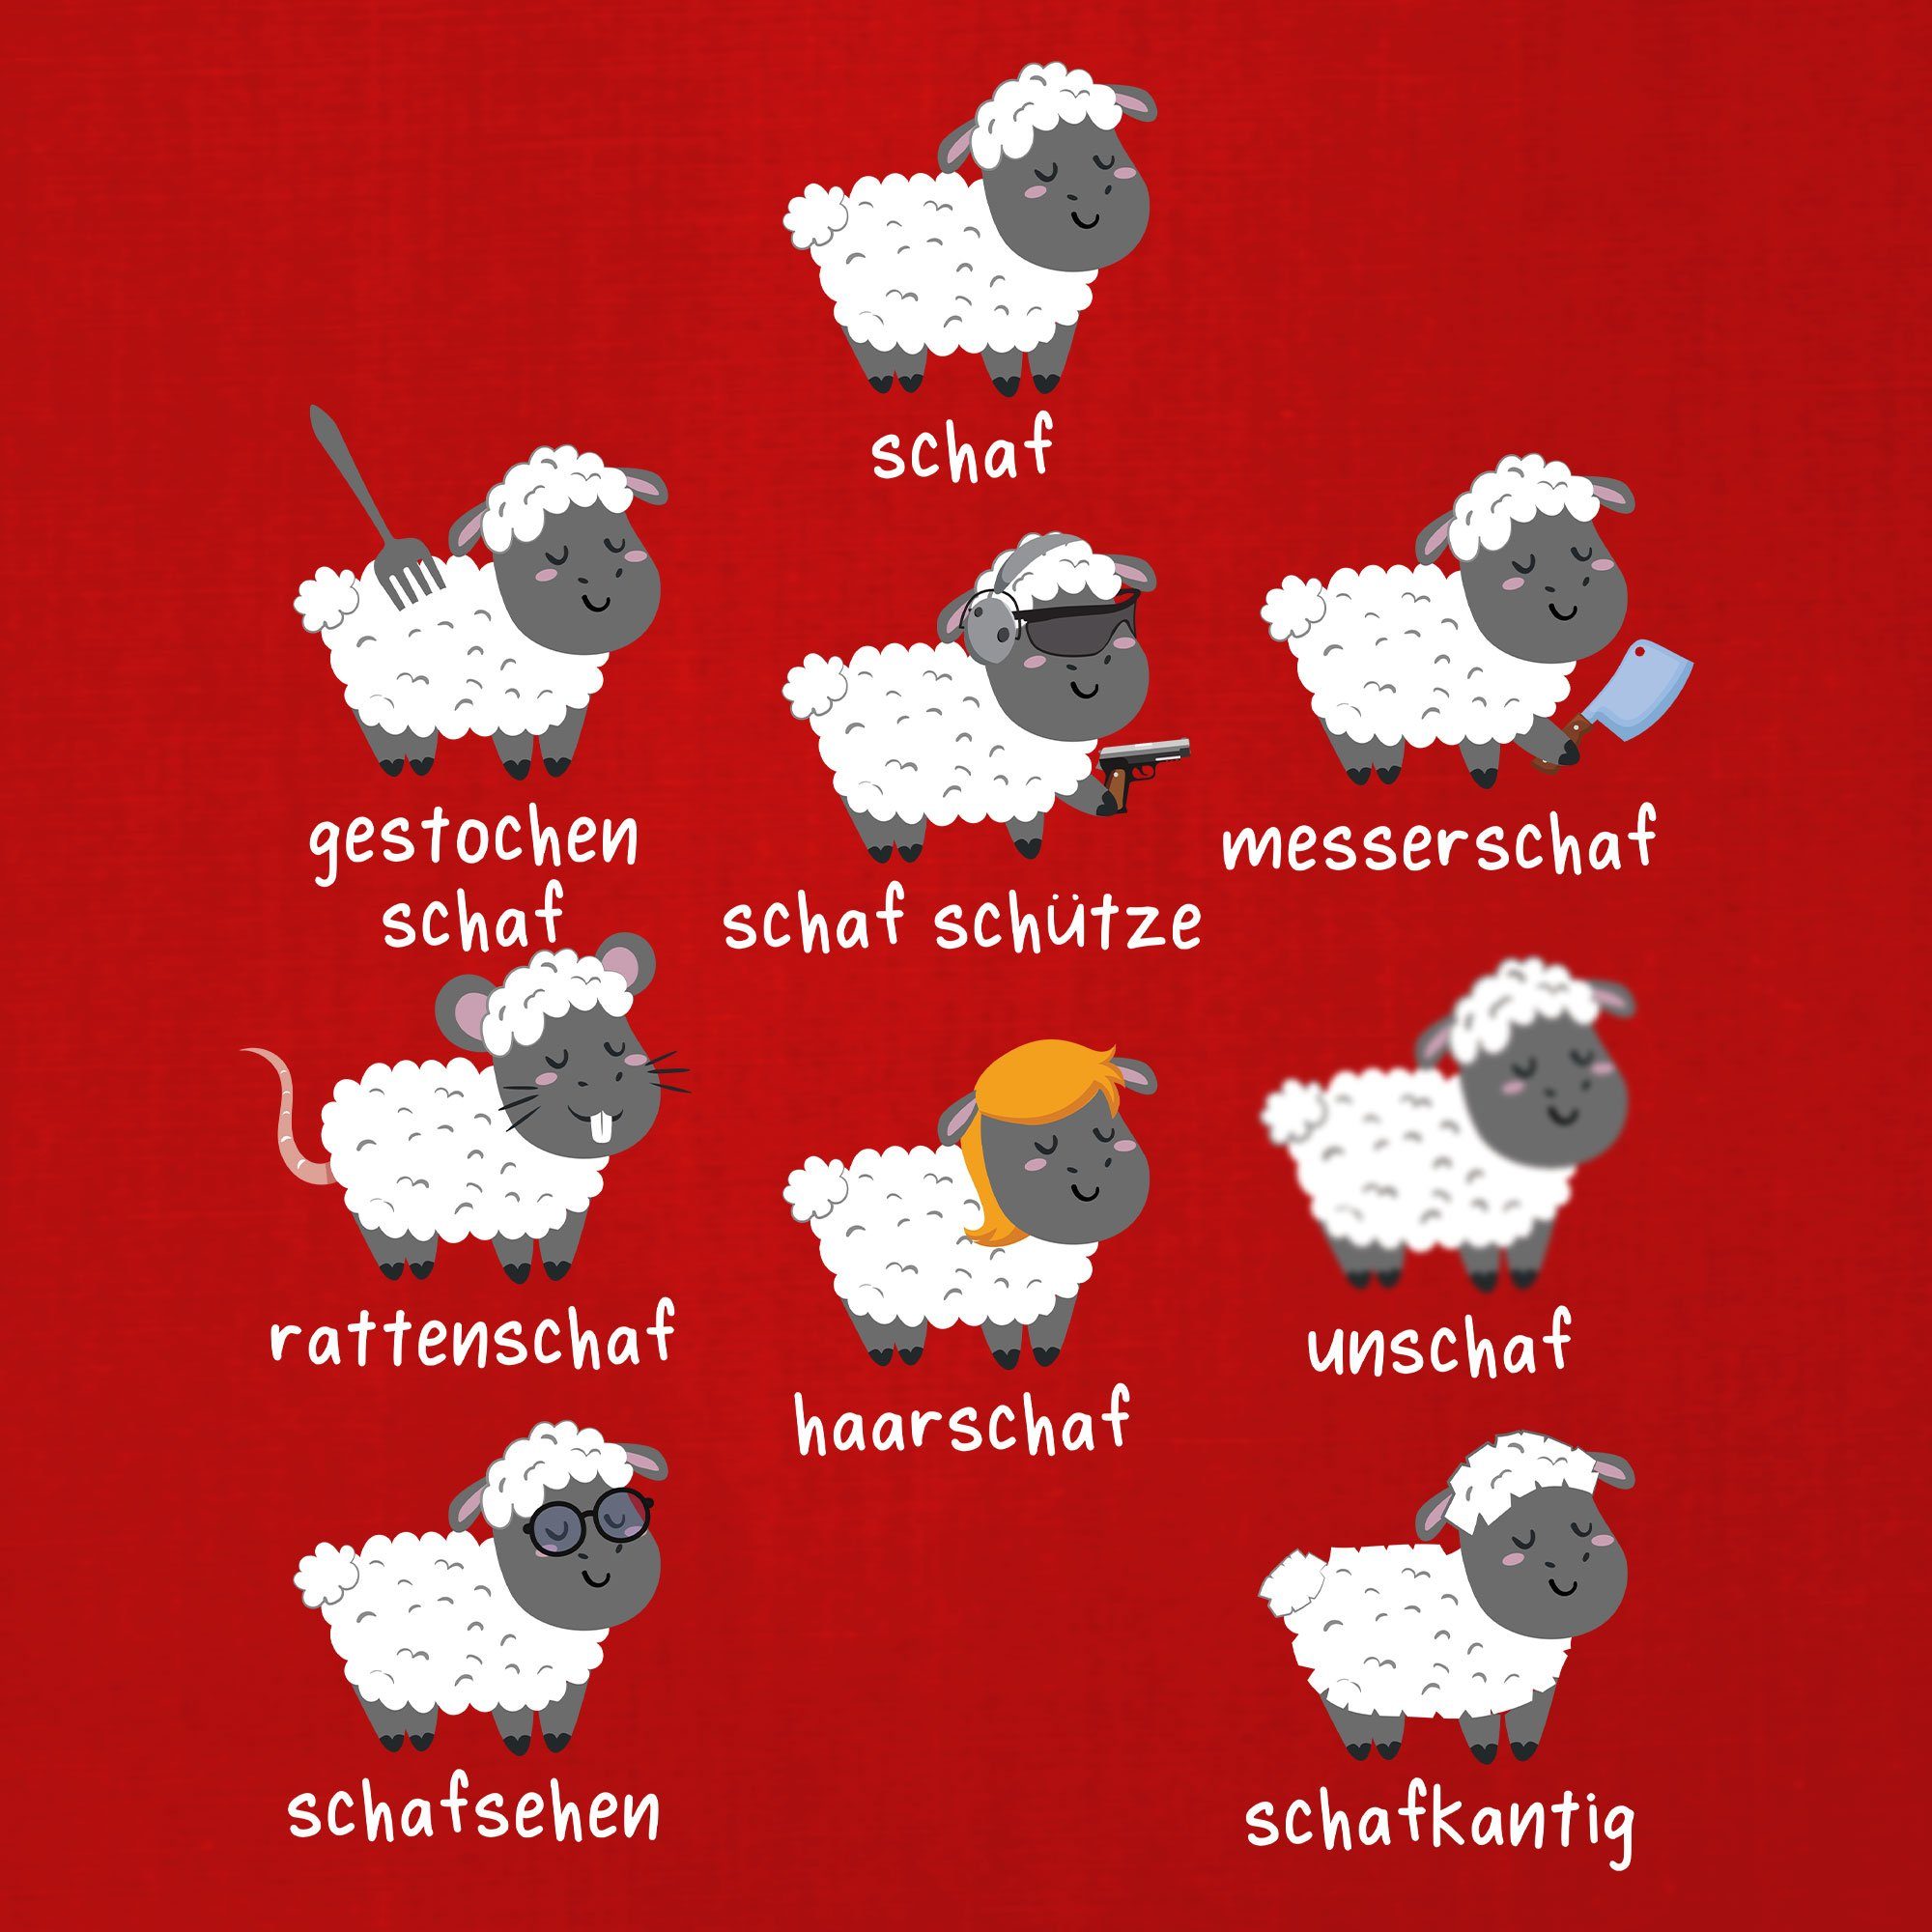 Herren Rot Schafe Kurzarmshirt Quattro Lustiger Statement Spruch Formatee Wortspiel Schafherde- T-Shirt (1-tlg)